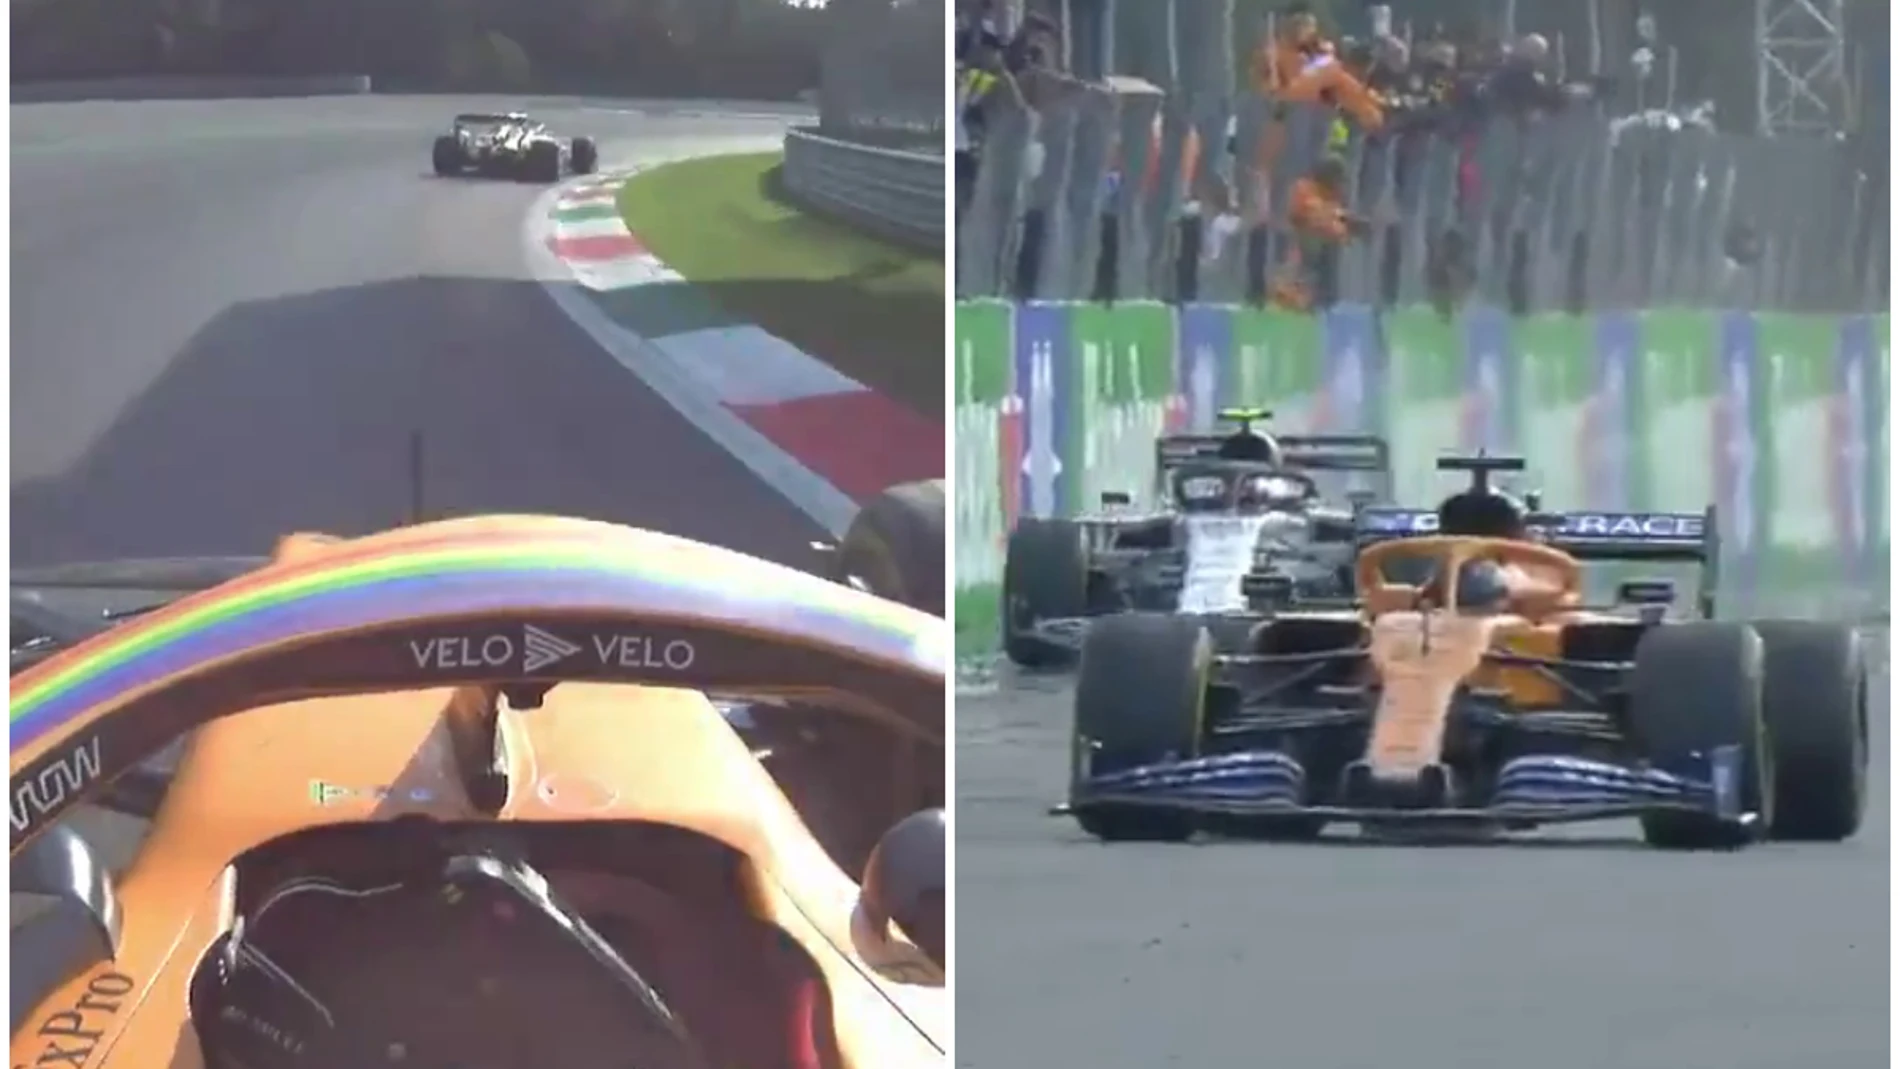 La lucha entre Sainz y Gasly en Monza